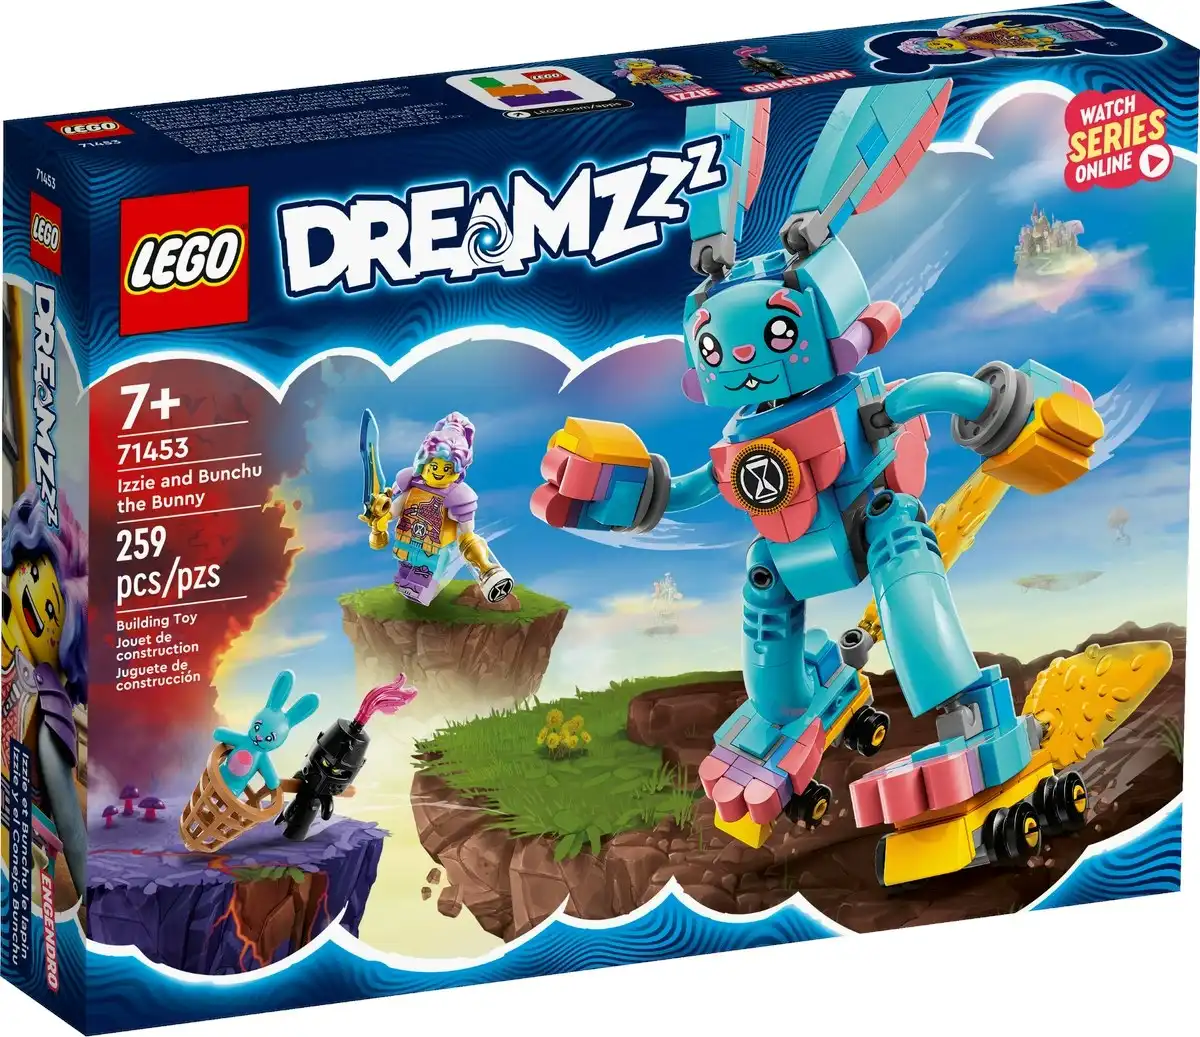 LEGO 71453 Izzie and Bunchu the Bunny - DreamZzz